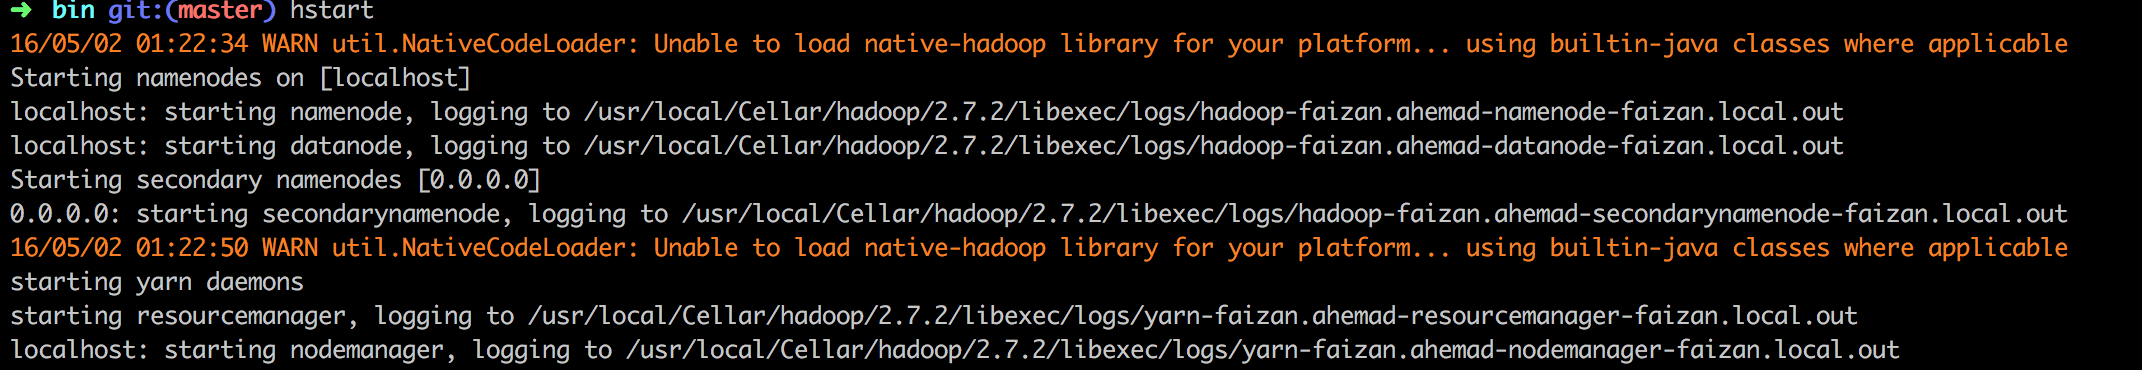 Mac Native Hadoop Library